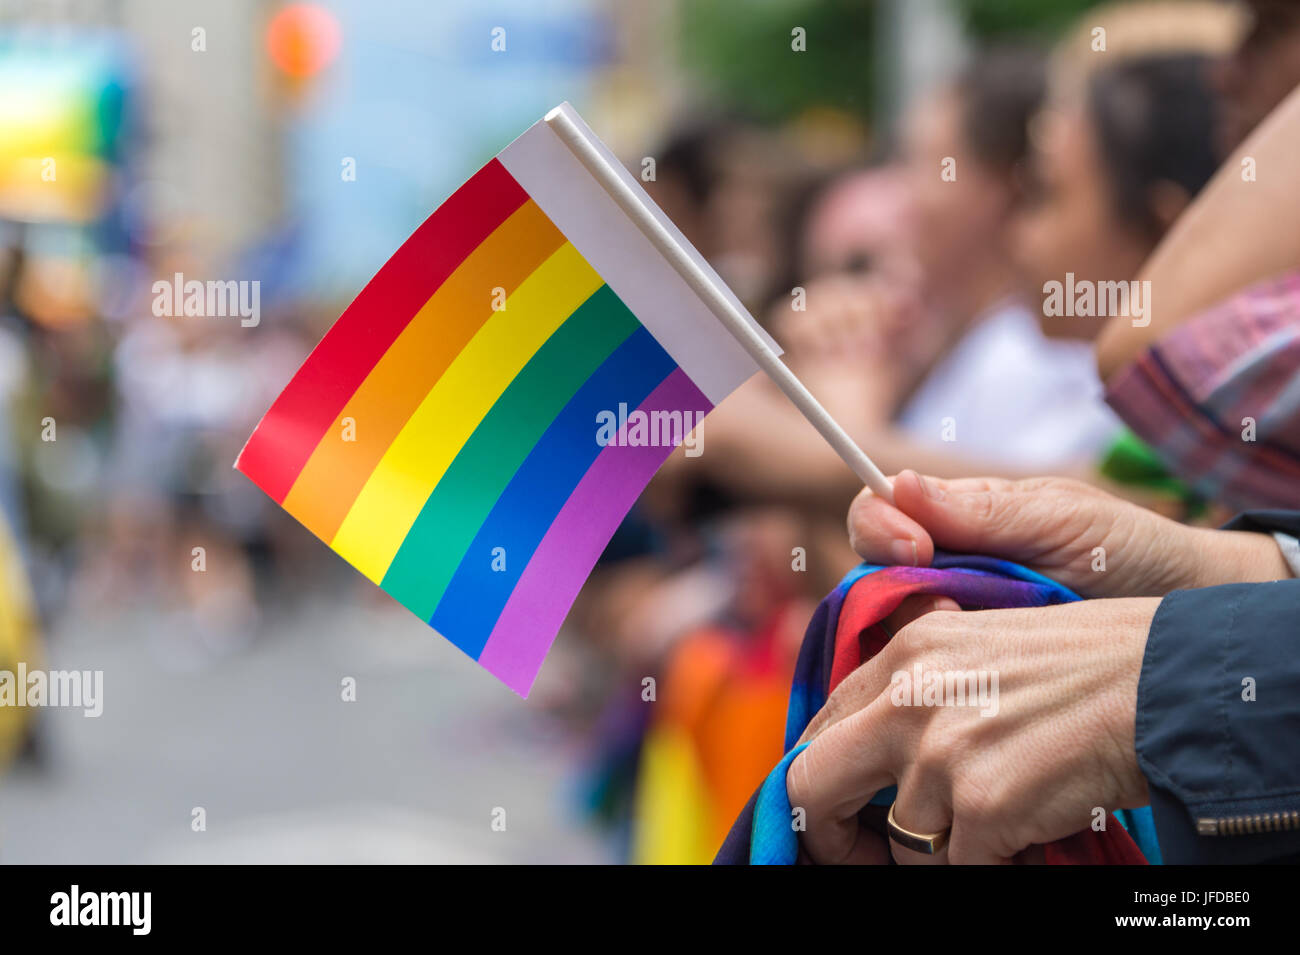 Gay Pride Parade spectateur holding petit drapeau arc-en-ciel Gay Pride Parade à Toronto en 2017 Banque D'Images